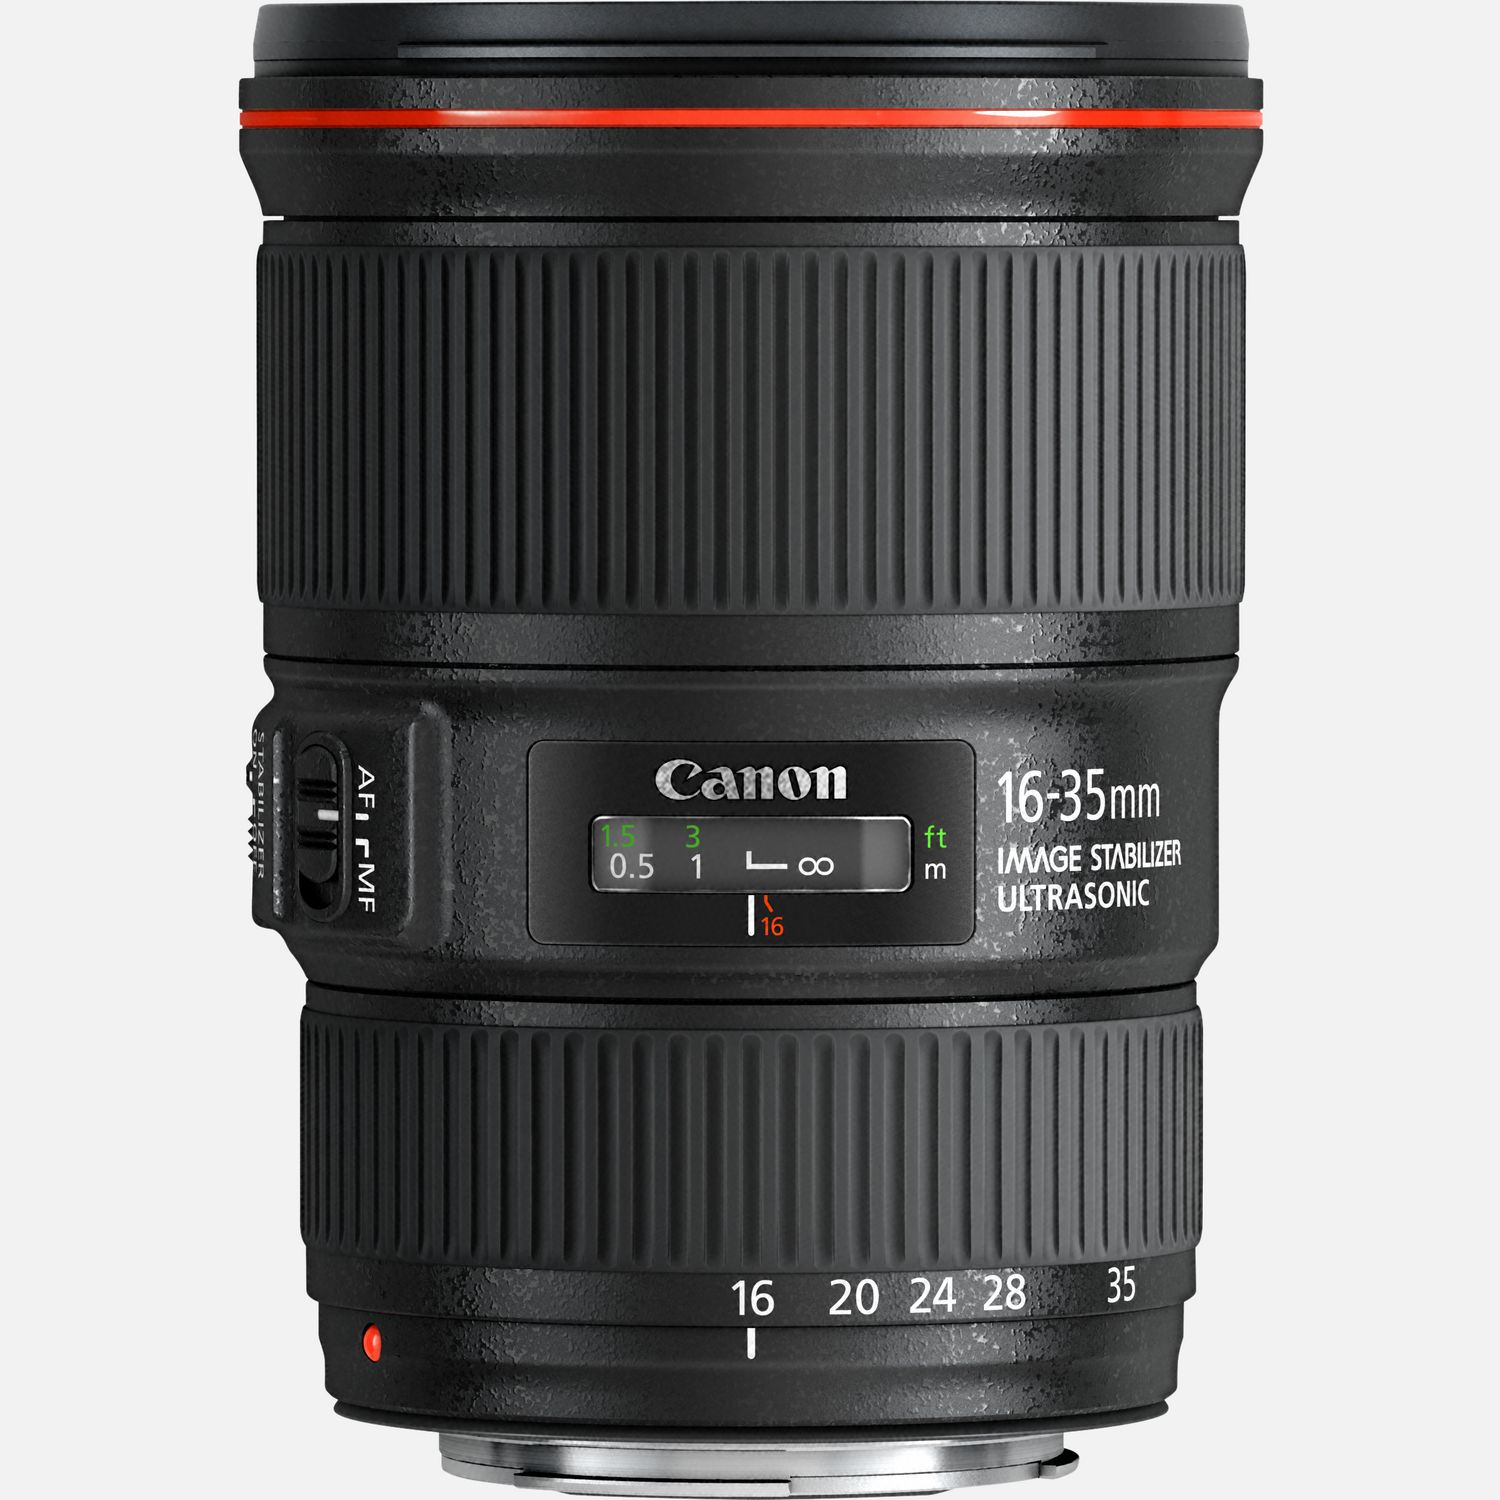 Buy Canon EF 16-35mm f/4L IS USM Lens